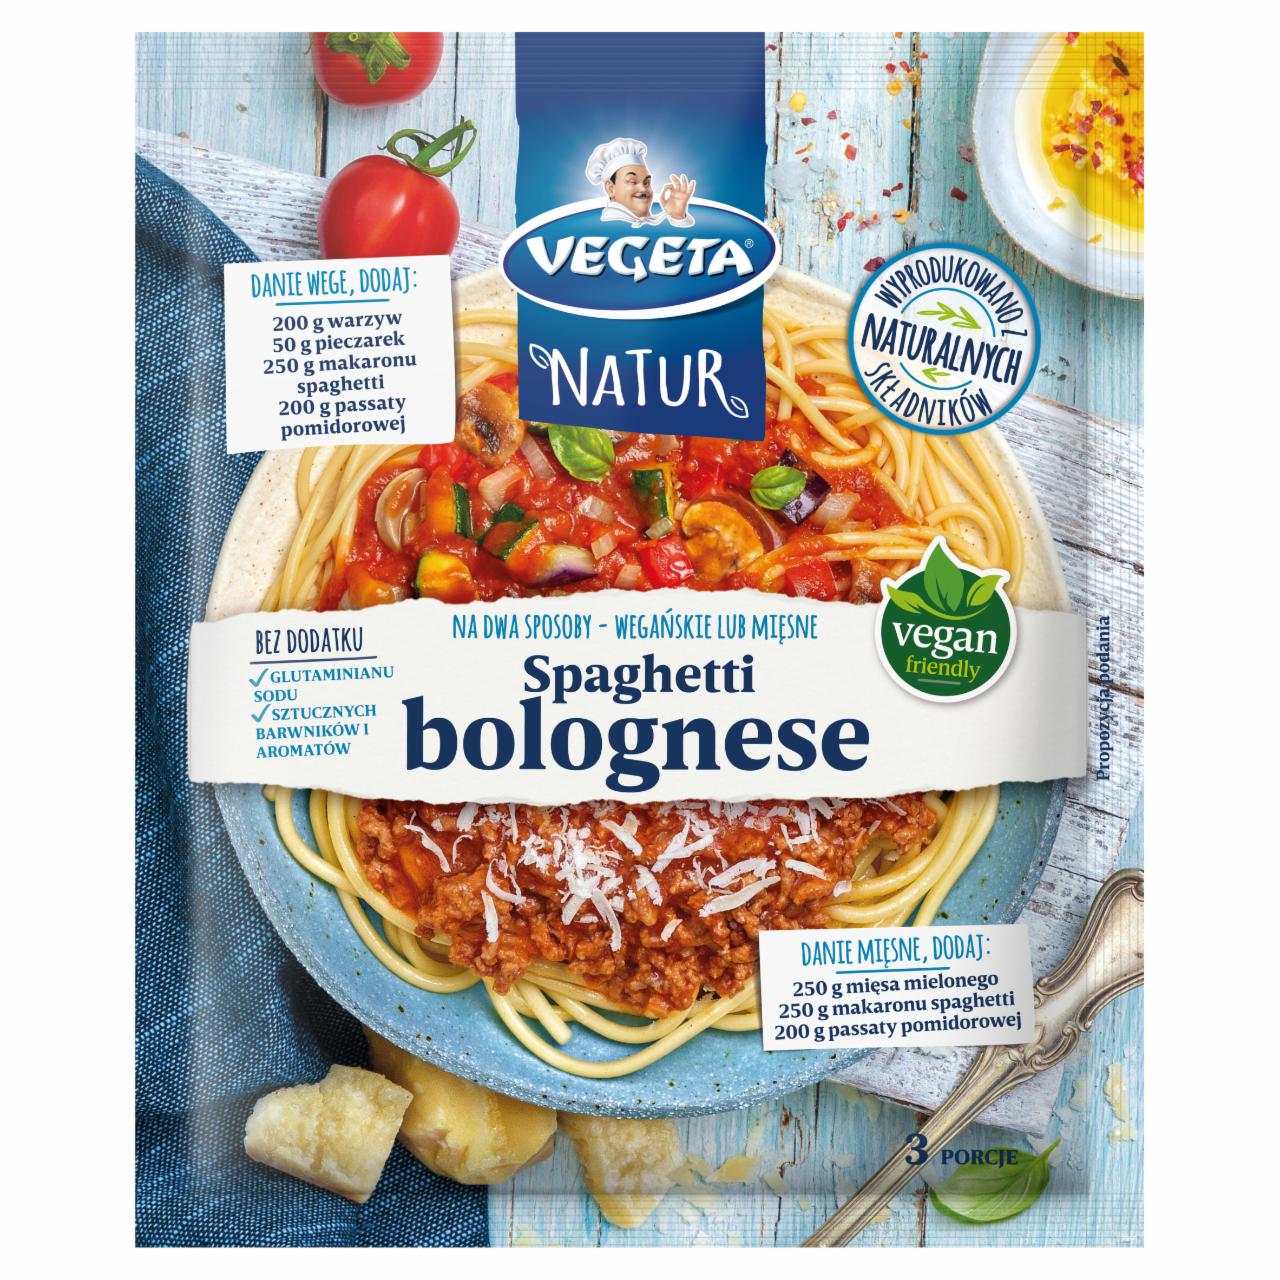 Zdjęcia - Vegeta Natur Mieszanka warzyw ziół i przypraw do dań spaghetti bolognese 45 g